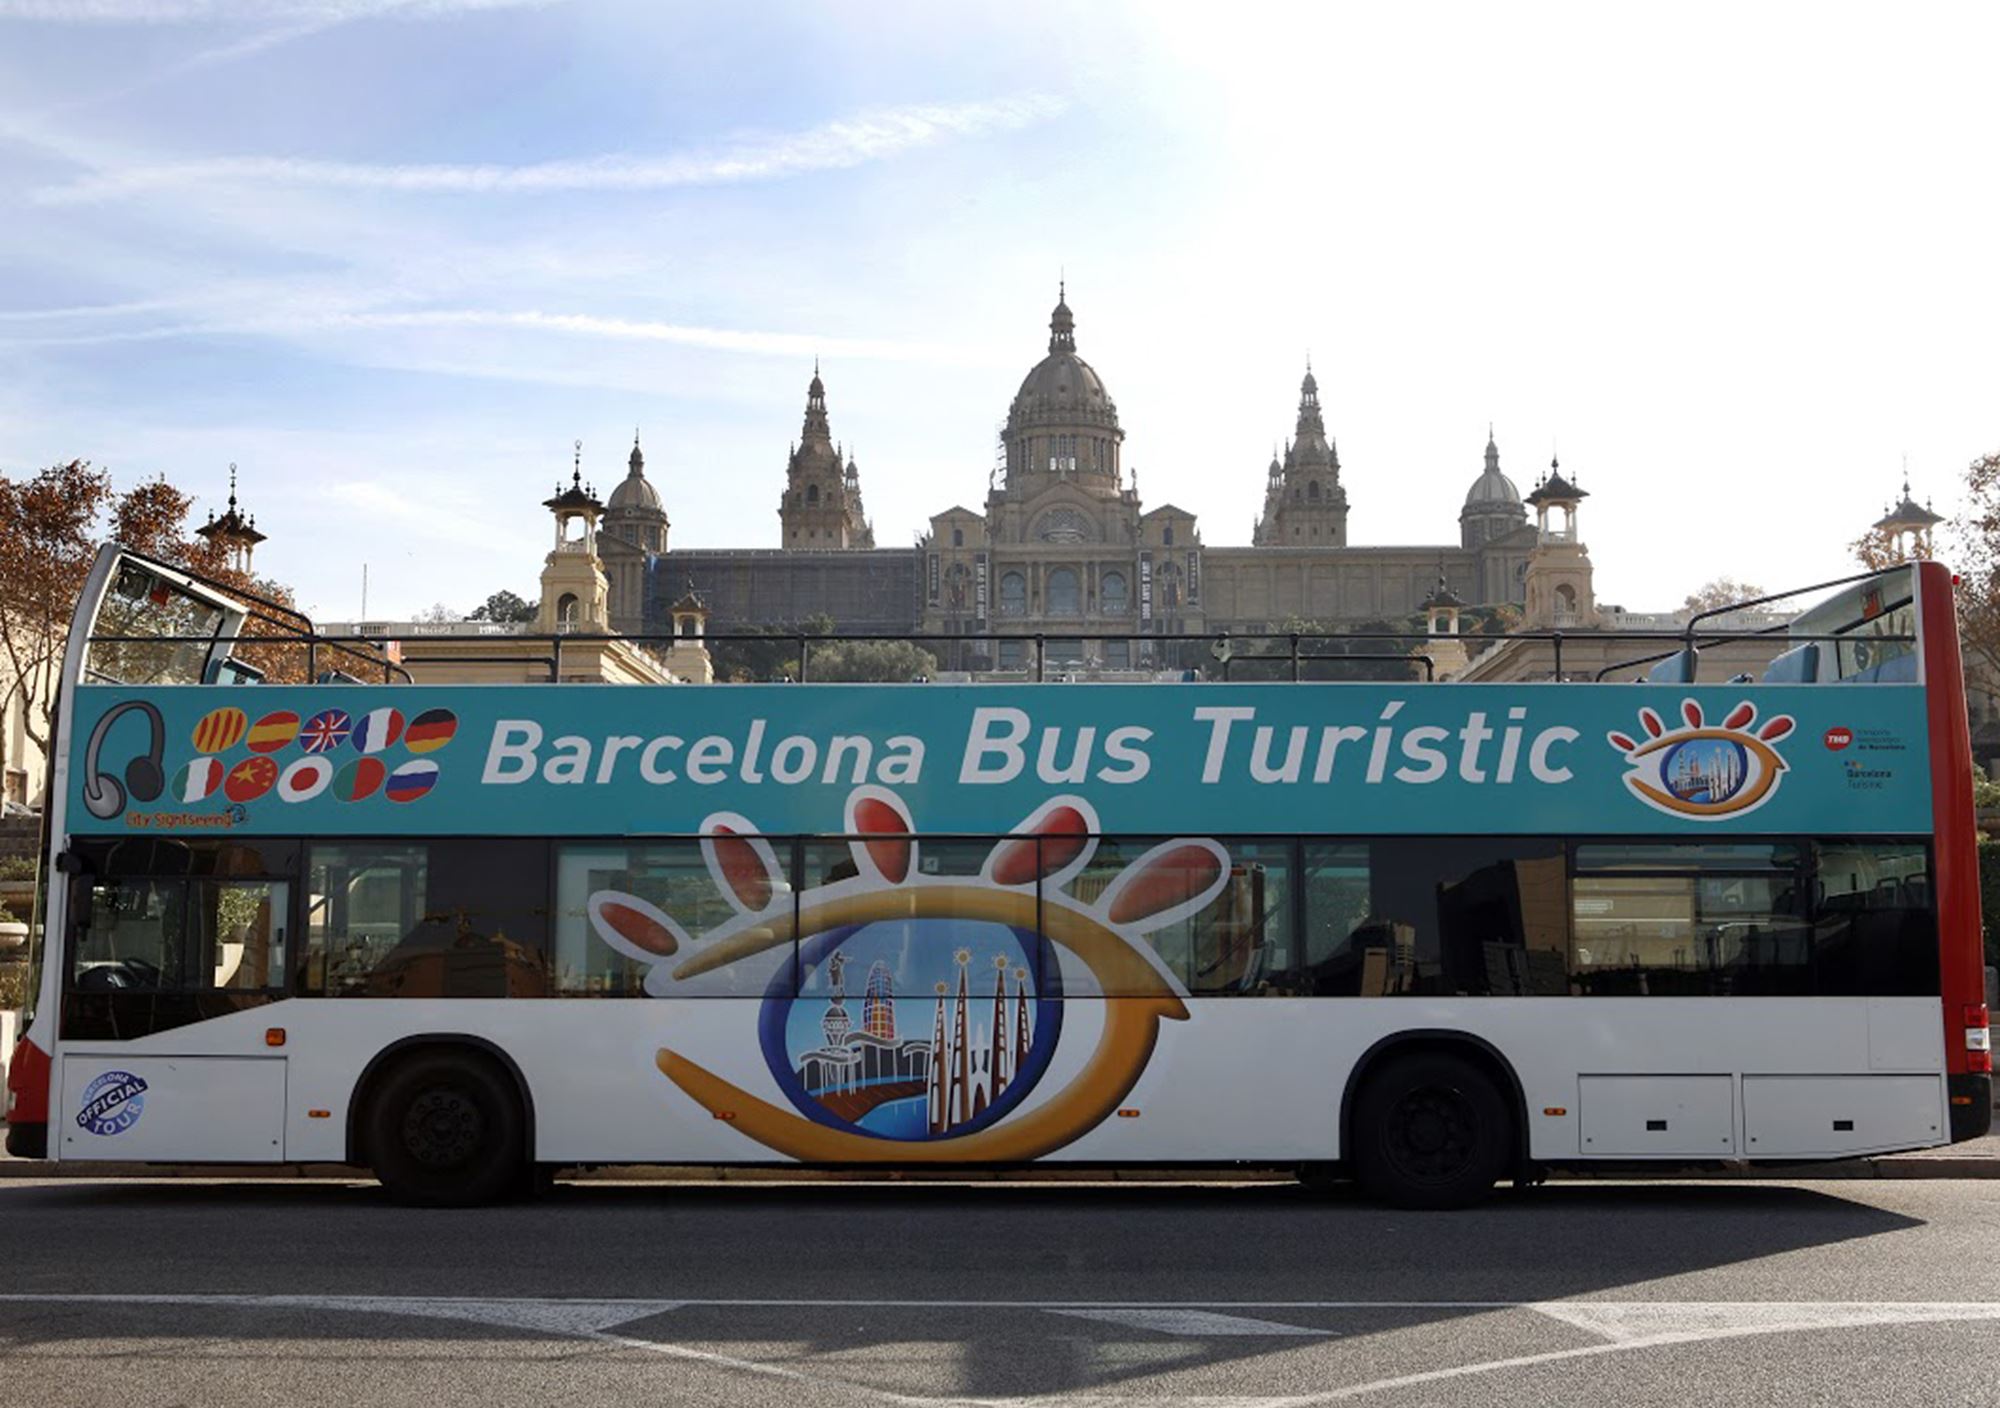 reservieren buchung besucht Touren Fahrkarte Eintrittskarten Touristikbus City Sightseeing Barcelona